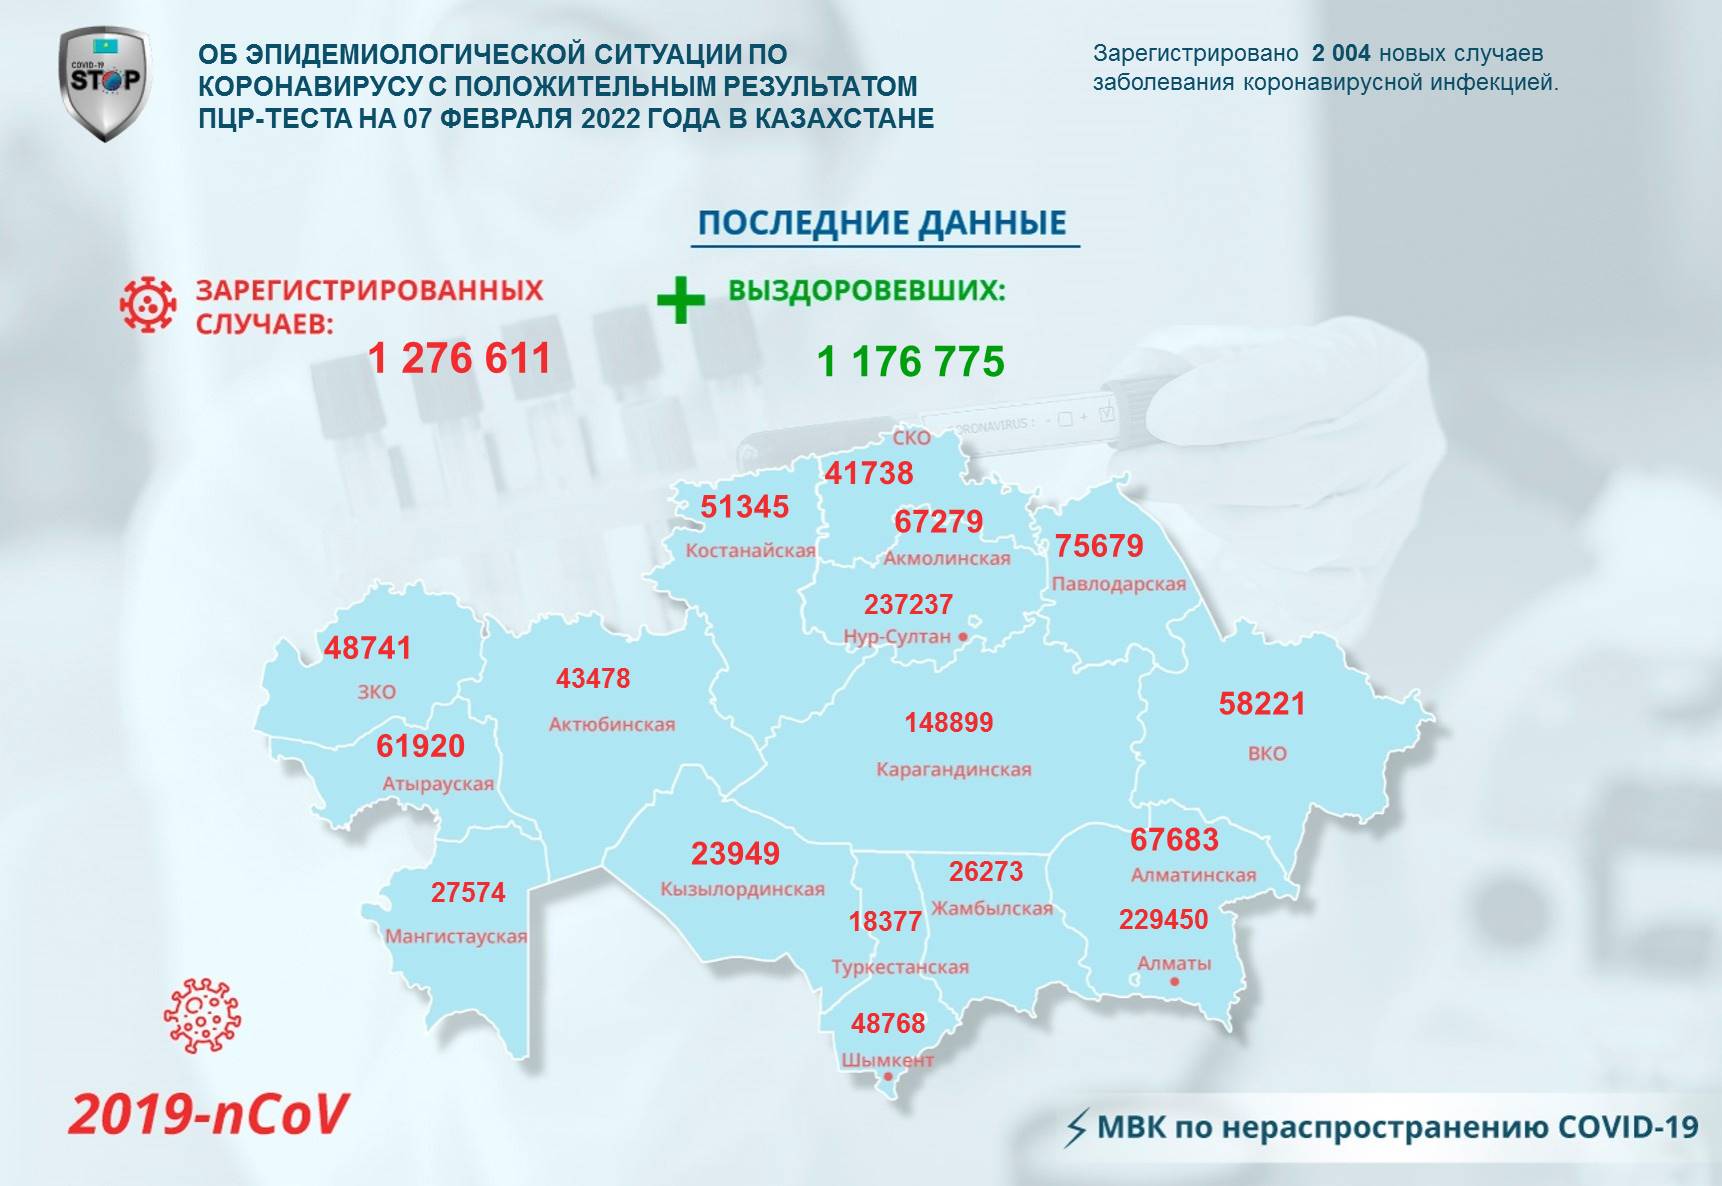 Об эпидемиологической ситуации по коронавирусу с положительным результатом ПЦР-теста на 07 февраля 2022  года в Казахстане